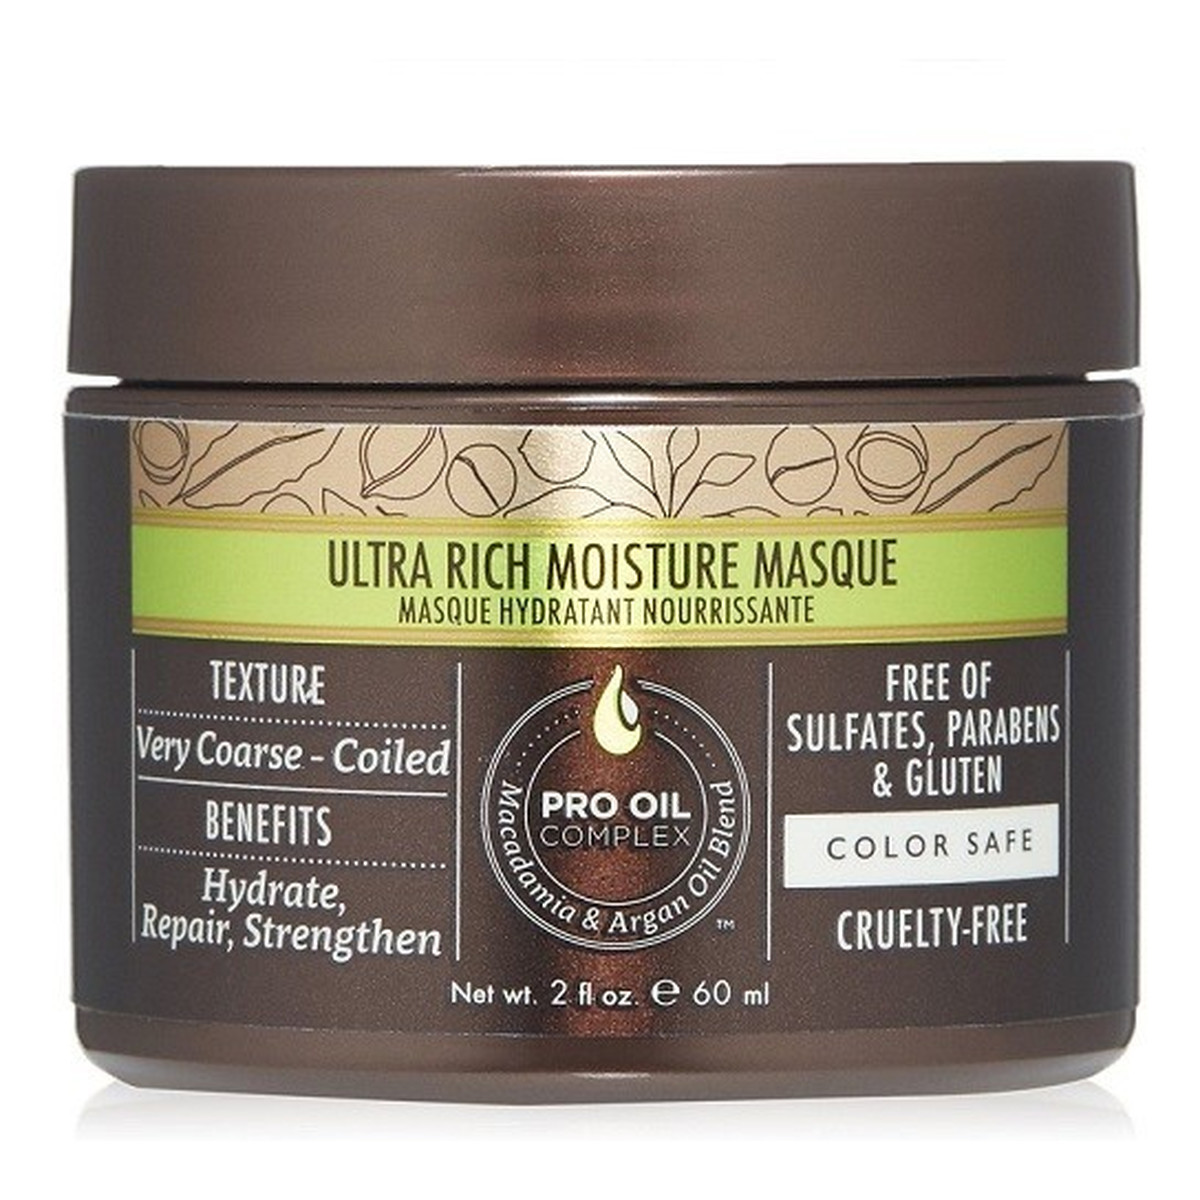 Macadamia Professional Professional Ultra Rich Moisture Masque nawilżająca maska do włosów grubych 60ml